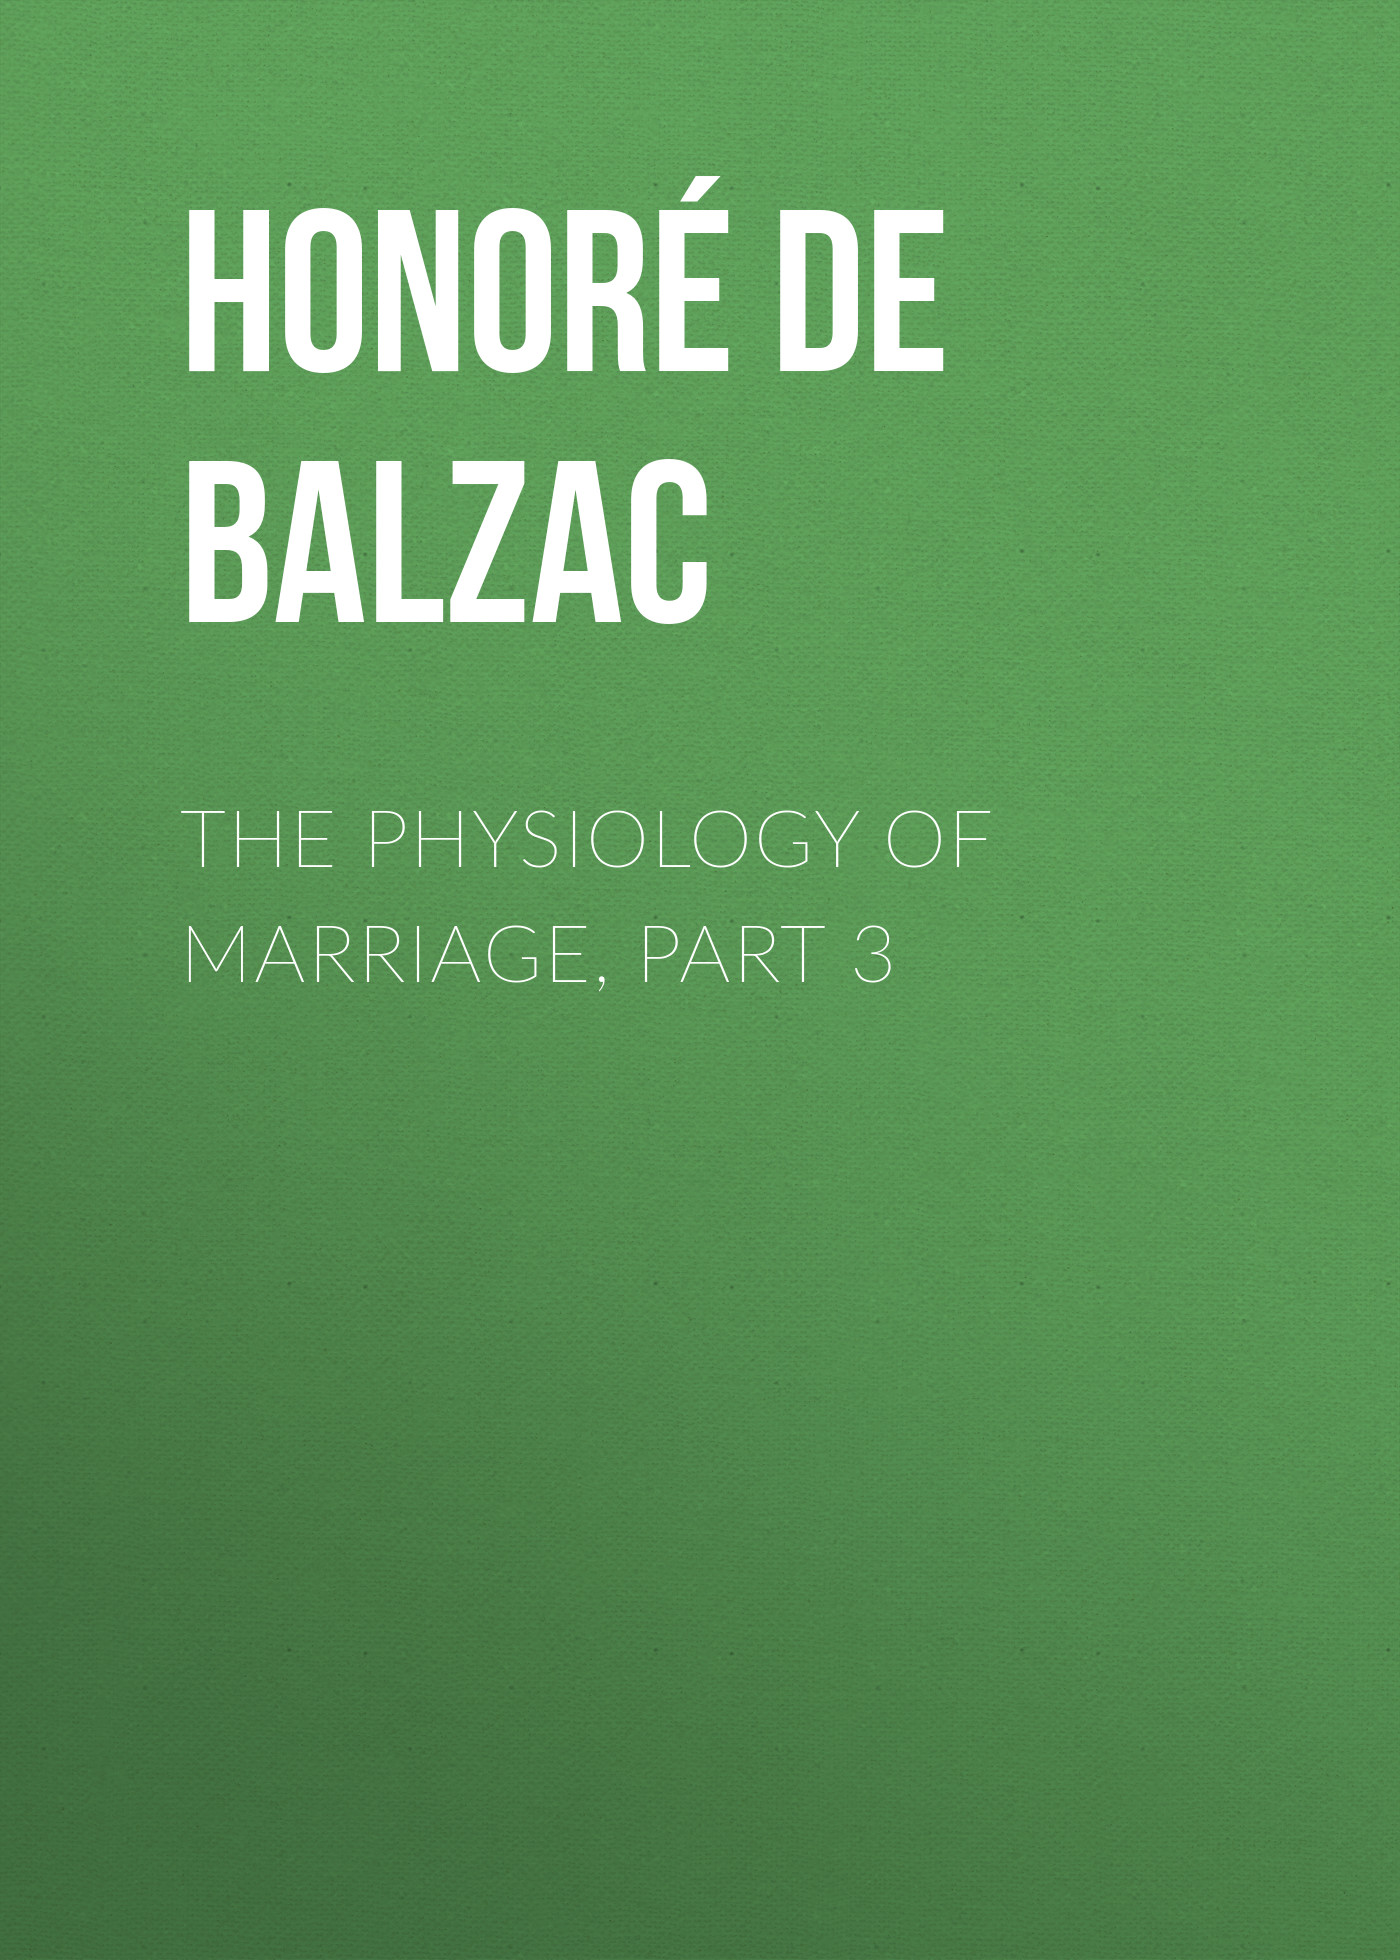 Книга The Physiology of Marriage, Part 3  из серии , созданная Honoré Balzac, может относится к жанру Литература 19 века, Зарубежная старинная литература, Зарубежная классика. Стоимость электронной книги The Physiology of Marriage, Part 3  с идентификатором 25021299 составляет 0 руб.